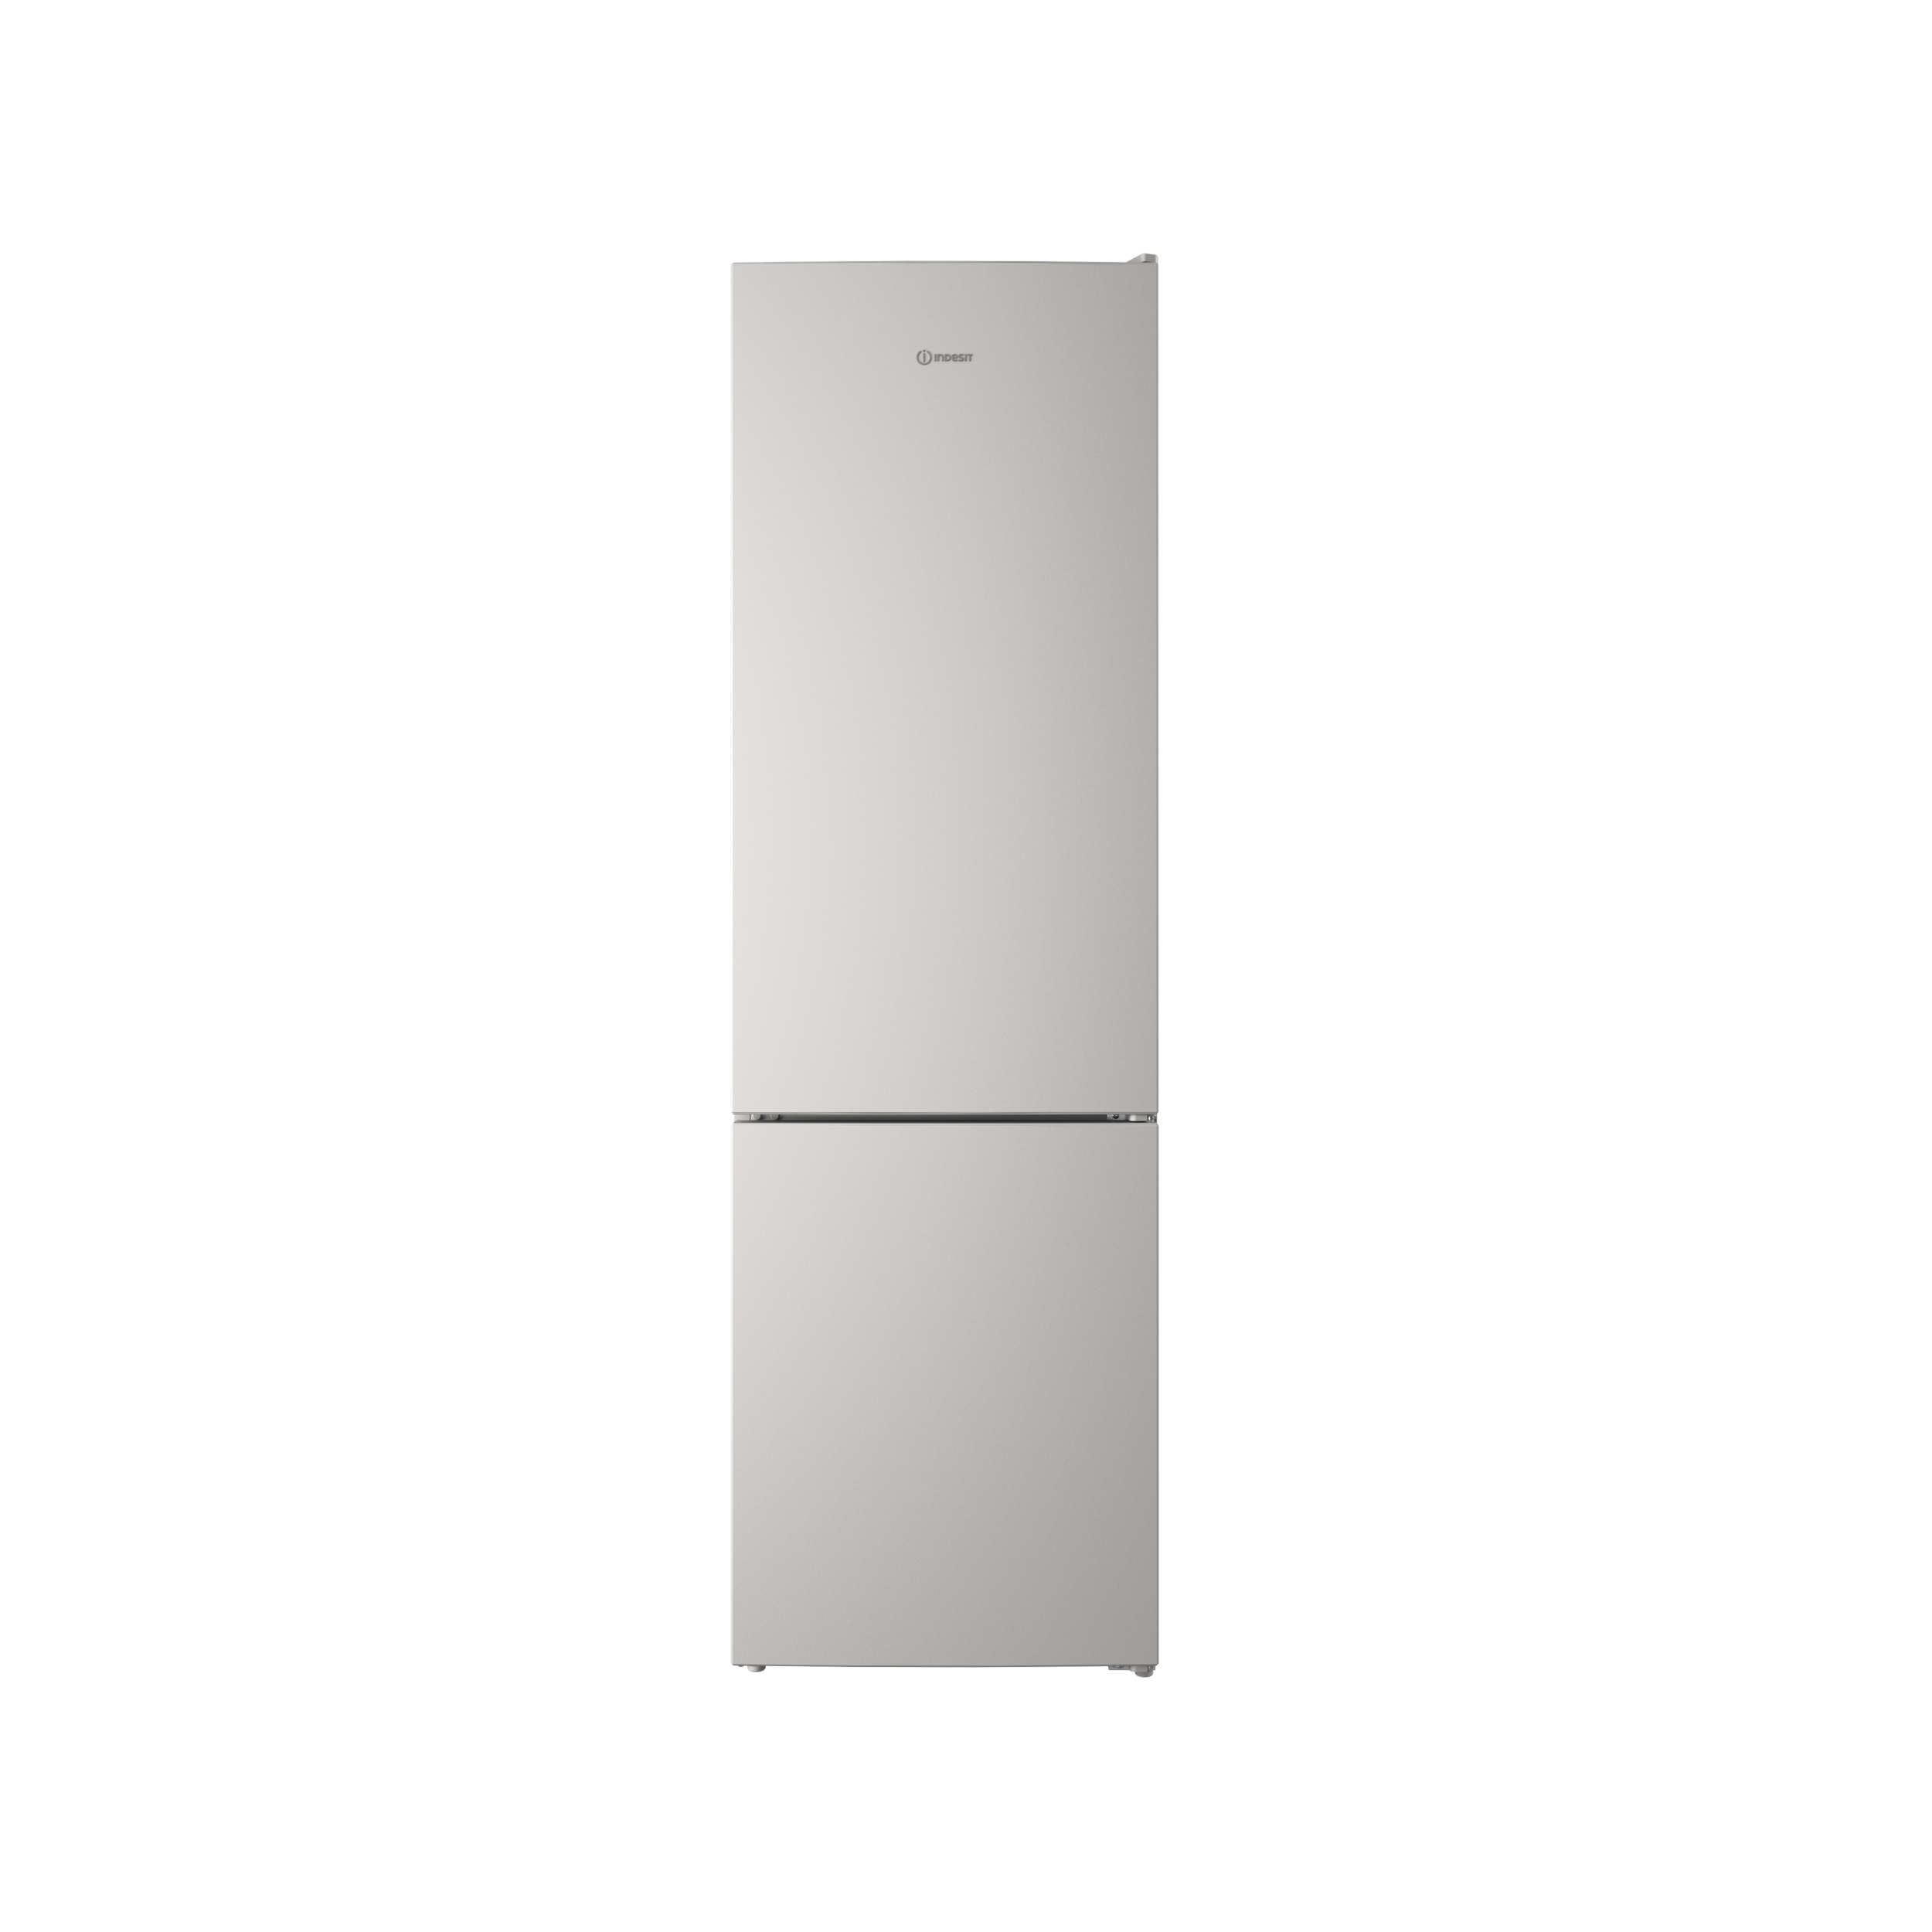 Холодильник с нижней морозильной камерой Indesit ITR 4200 W рис.2